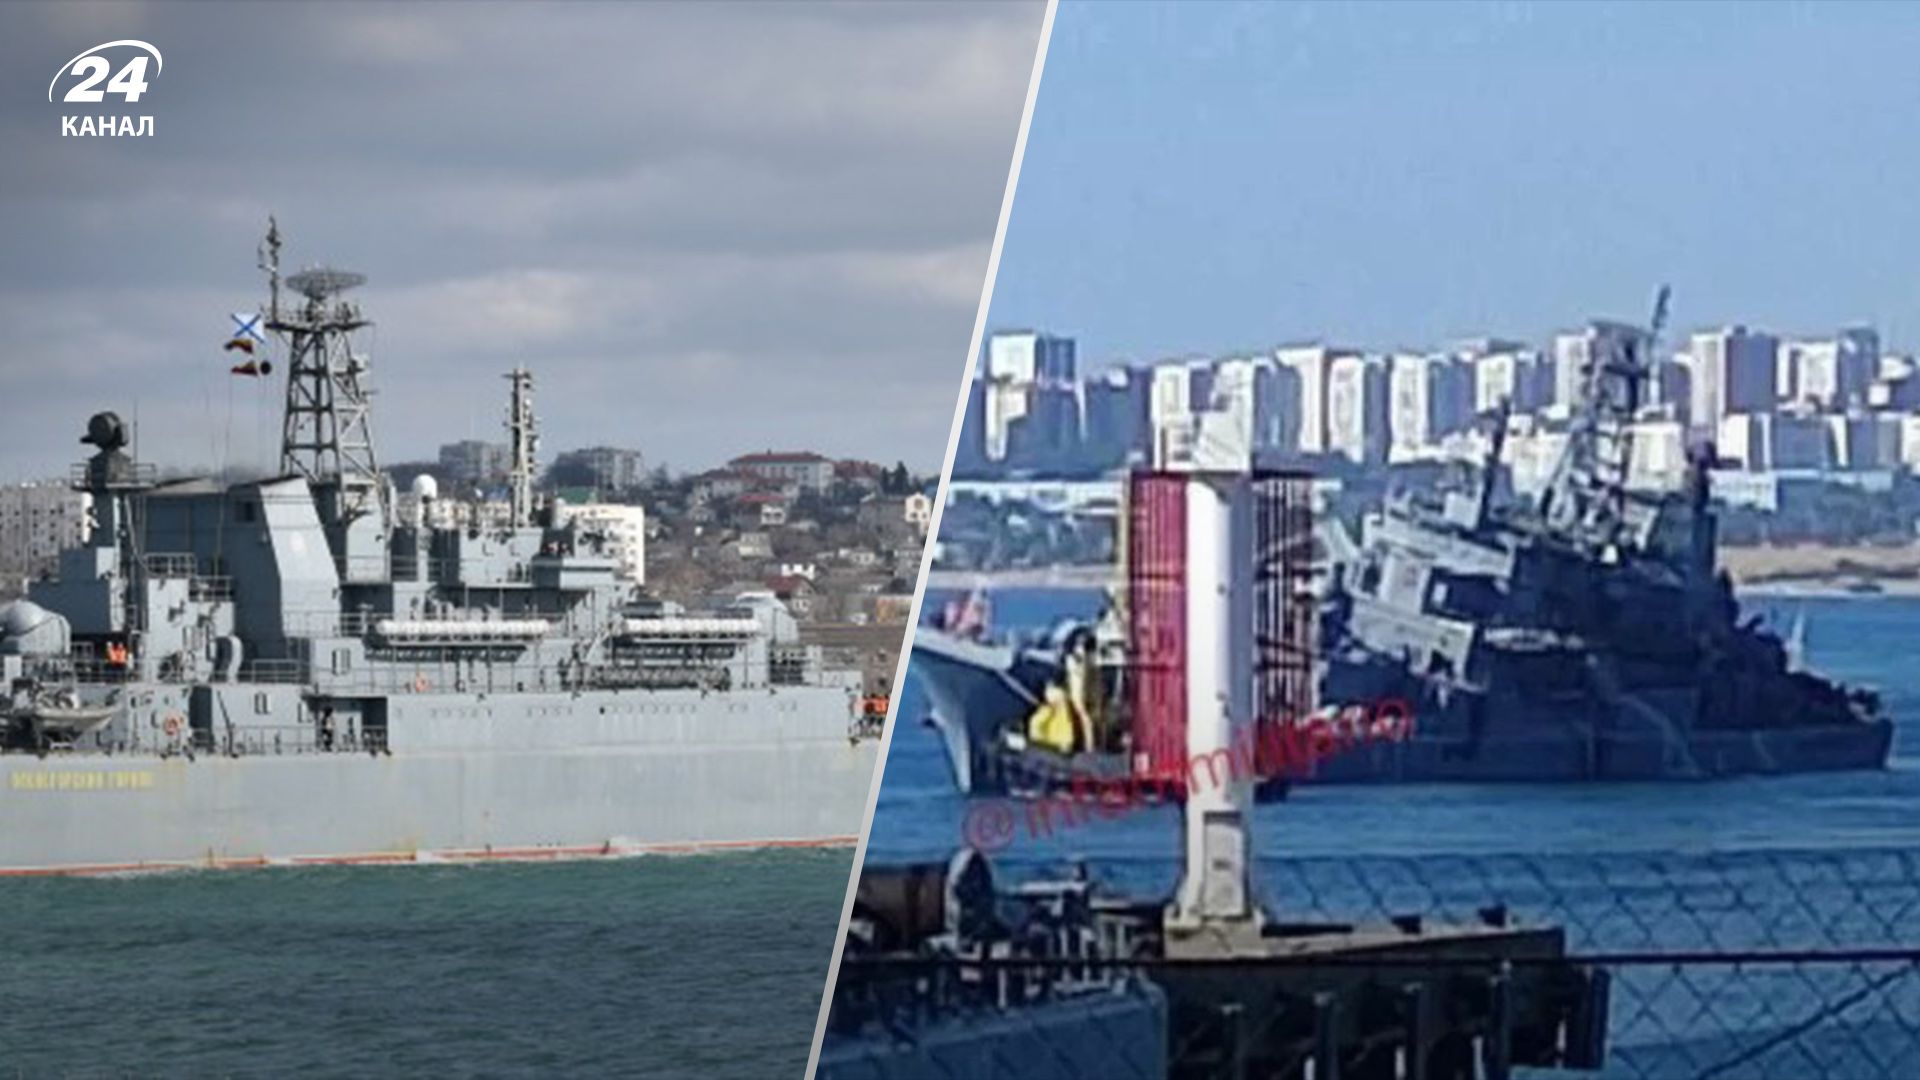 У ВМС пояснили, які плани росіян зірвала атака на корабель "Оленегорський горняк"